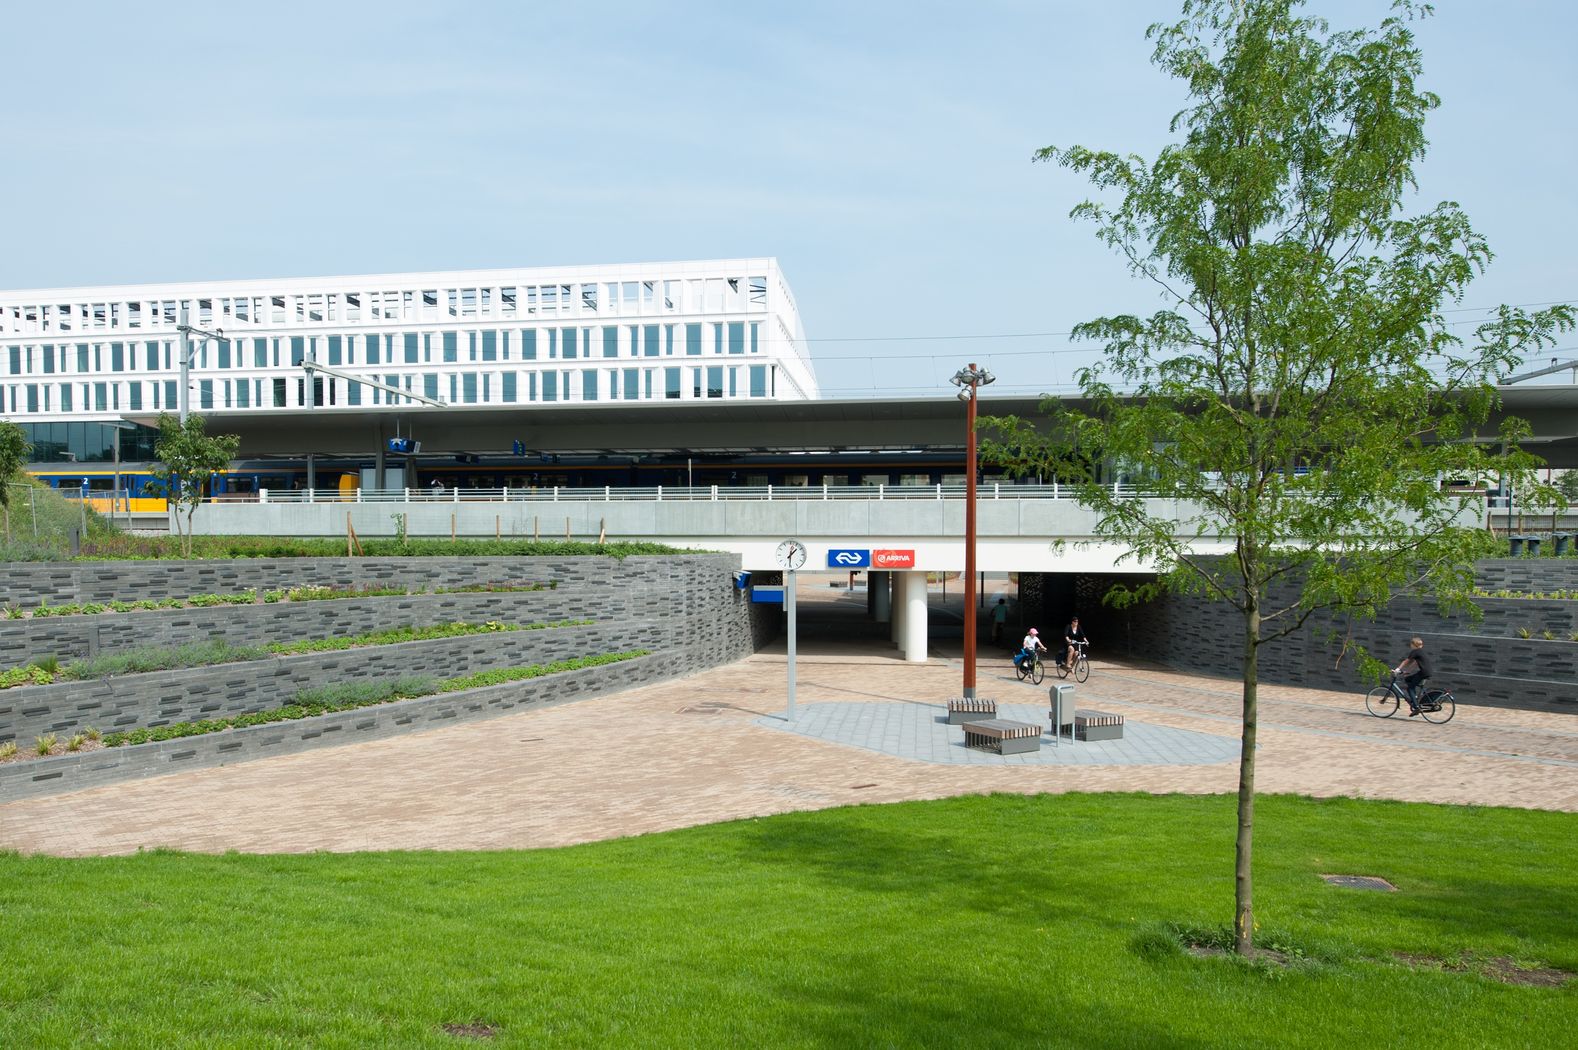 Station Groningen Europapark in de huidige situatie vanaf de Helperzoom